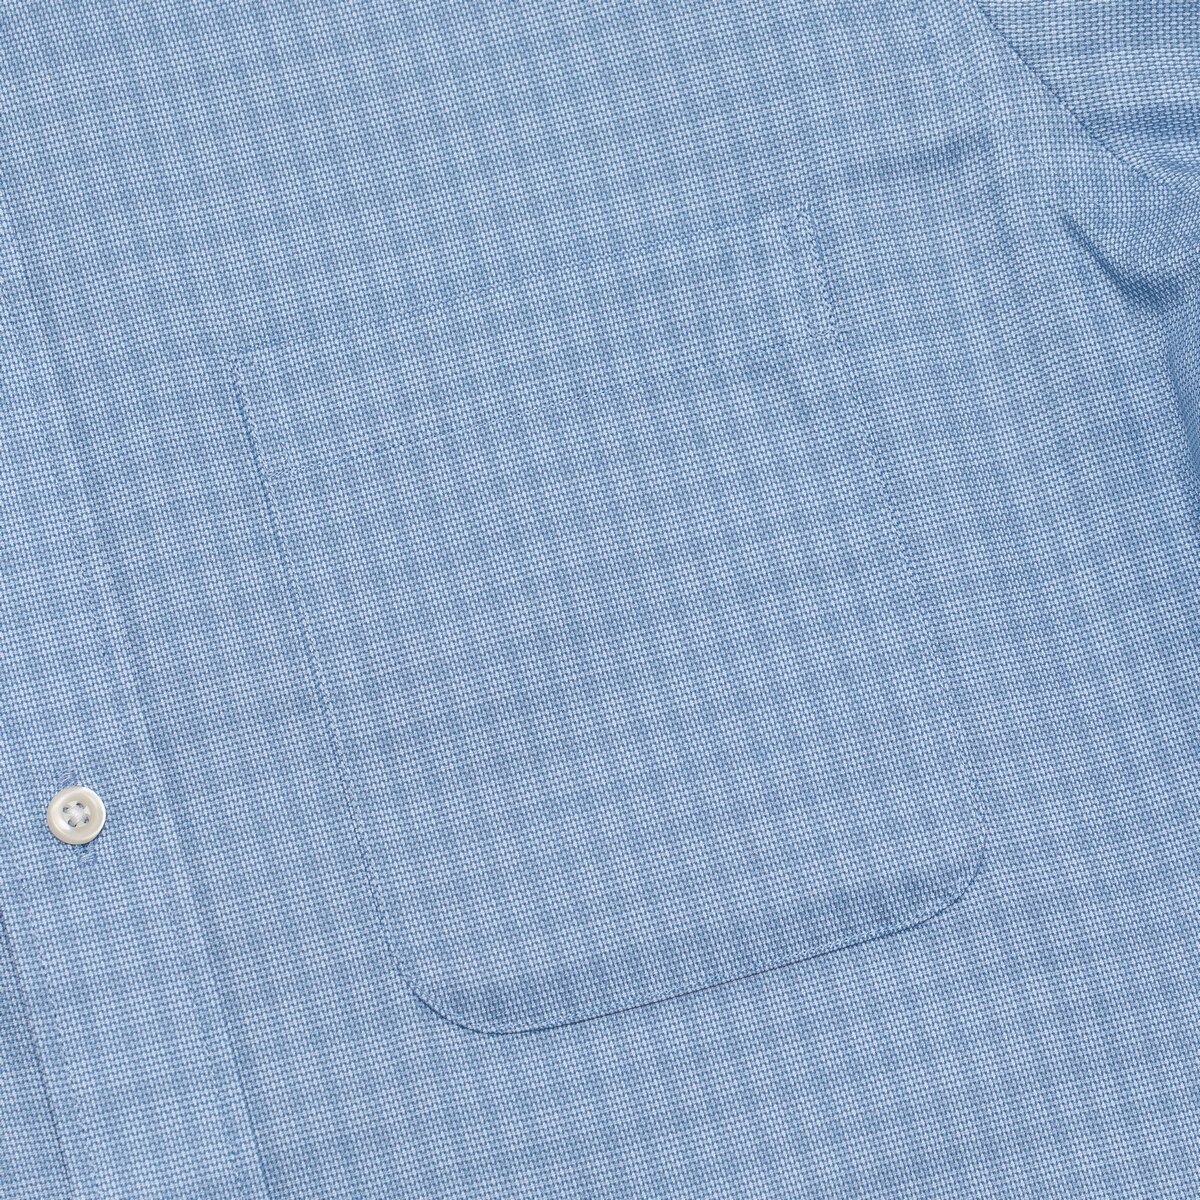 Kirkland Signature 科克蘭 男長袖鈕扣領印花襯衫 藍色格紋 領圍 17吋 X 袖長 32/33吋